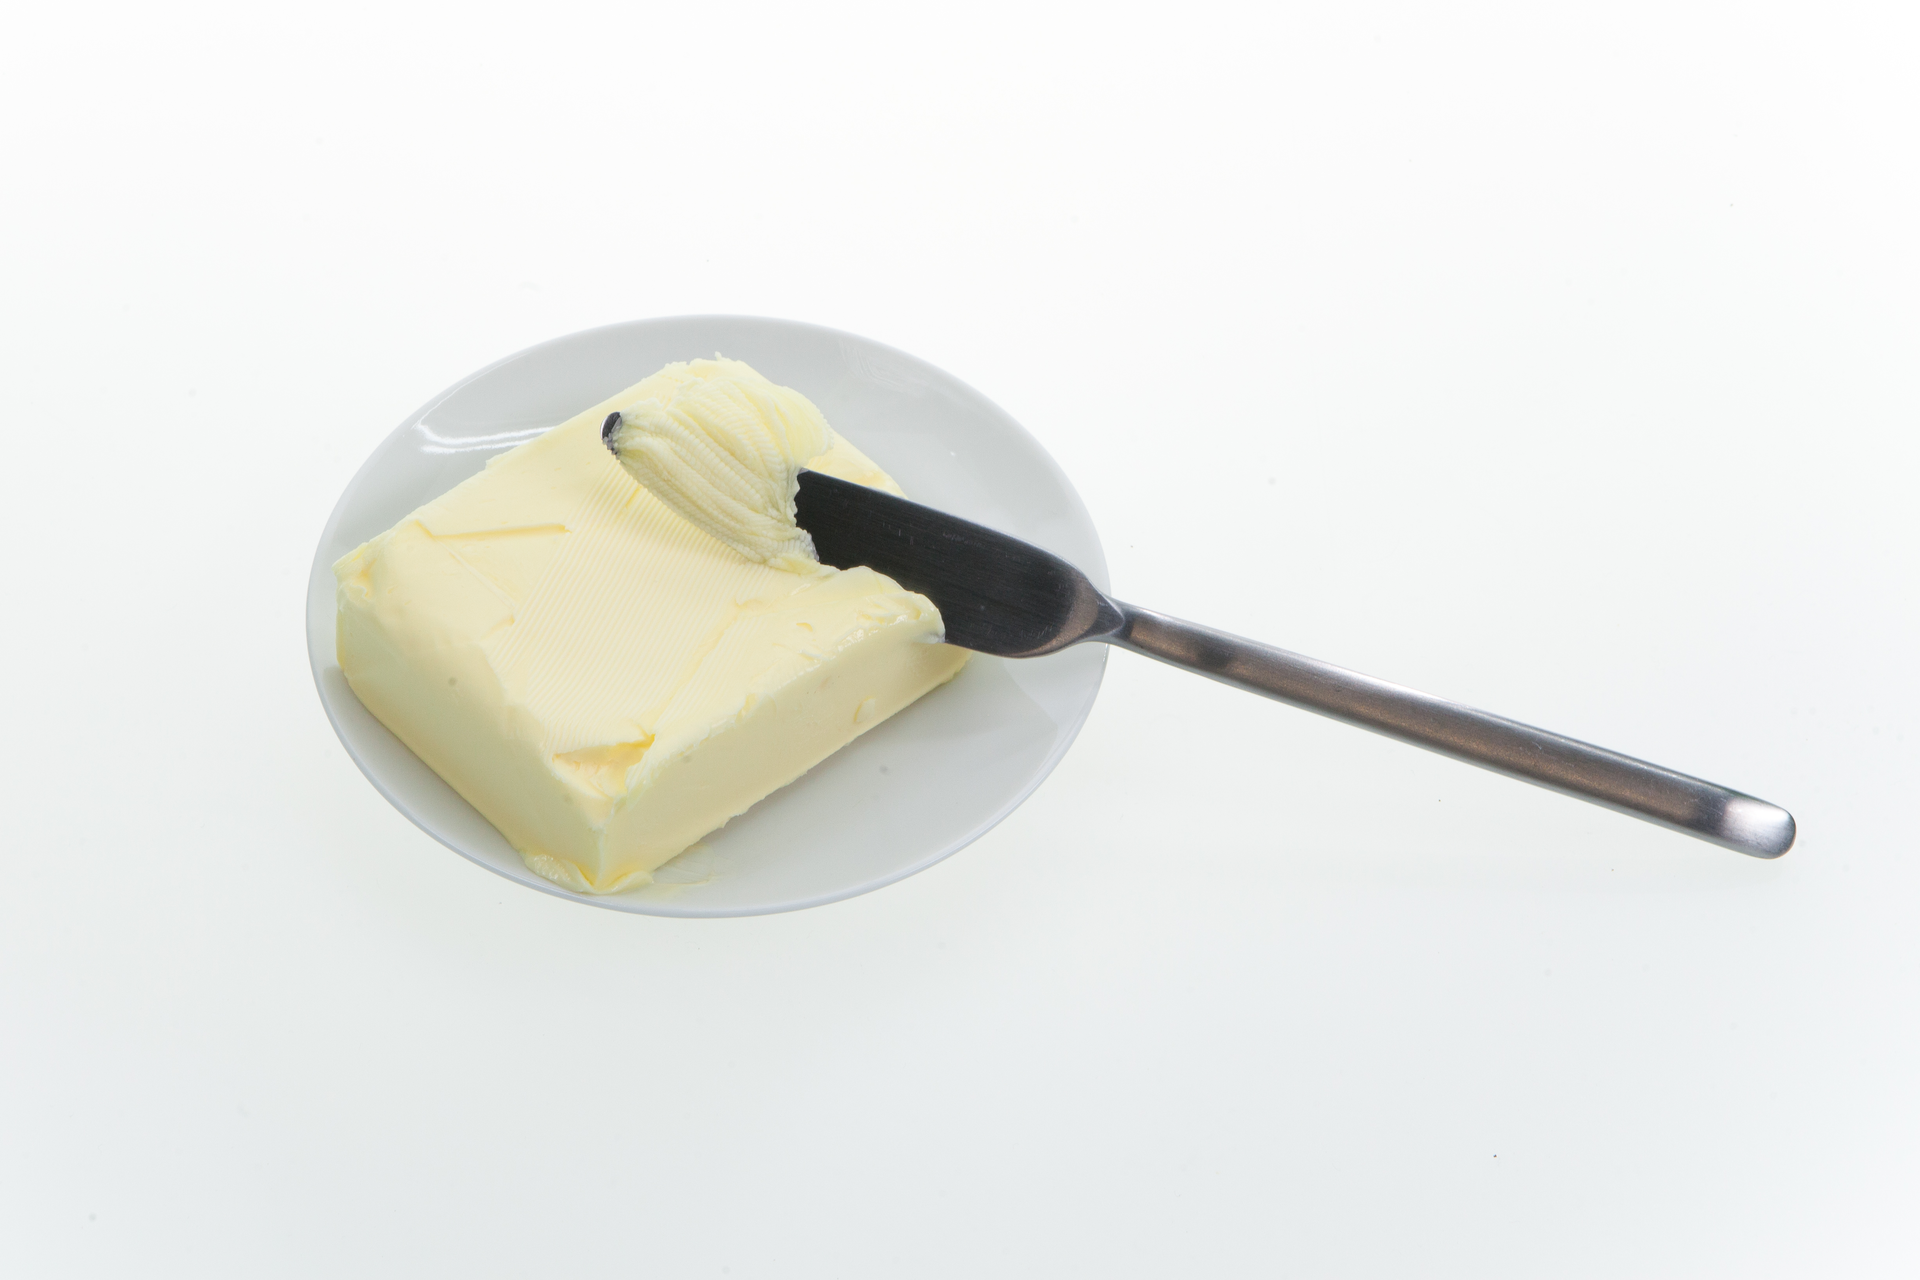 Zdjęcie przedstawia talerzyk z kostką masła i wbitym w nią metalowym nożem do smarowania. 